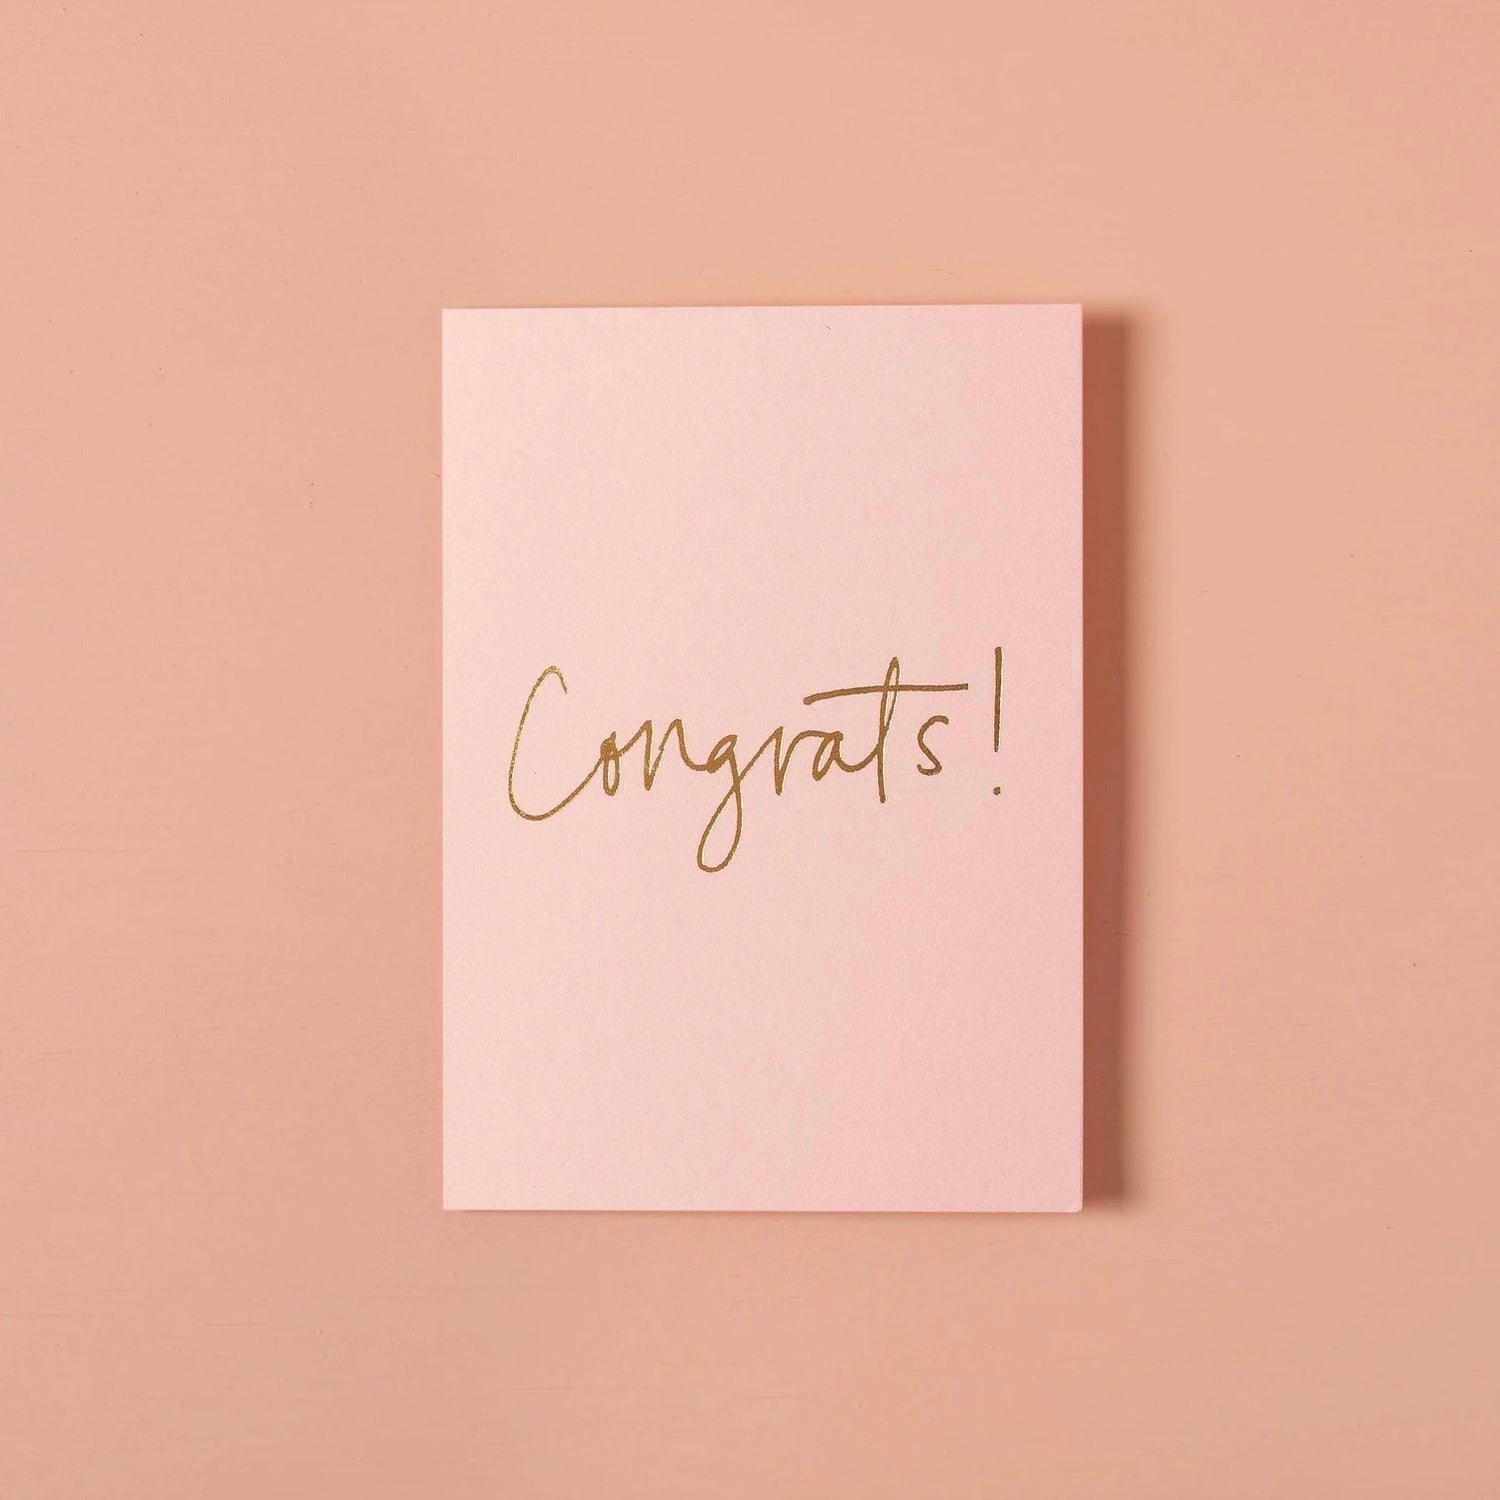 Congrats! Peony Pink Card